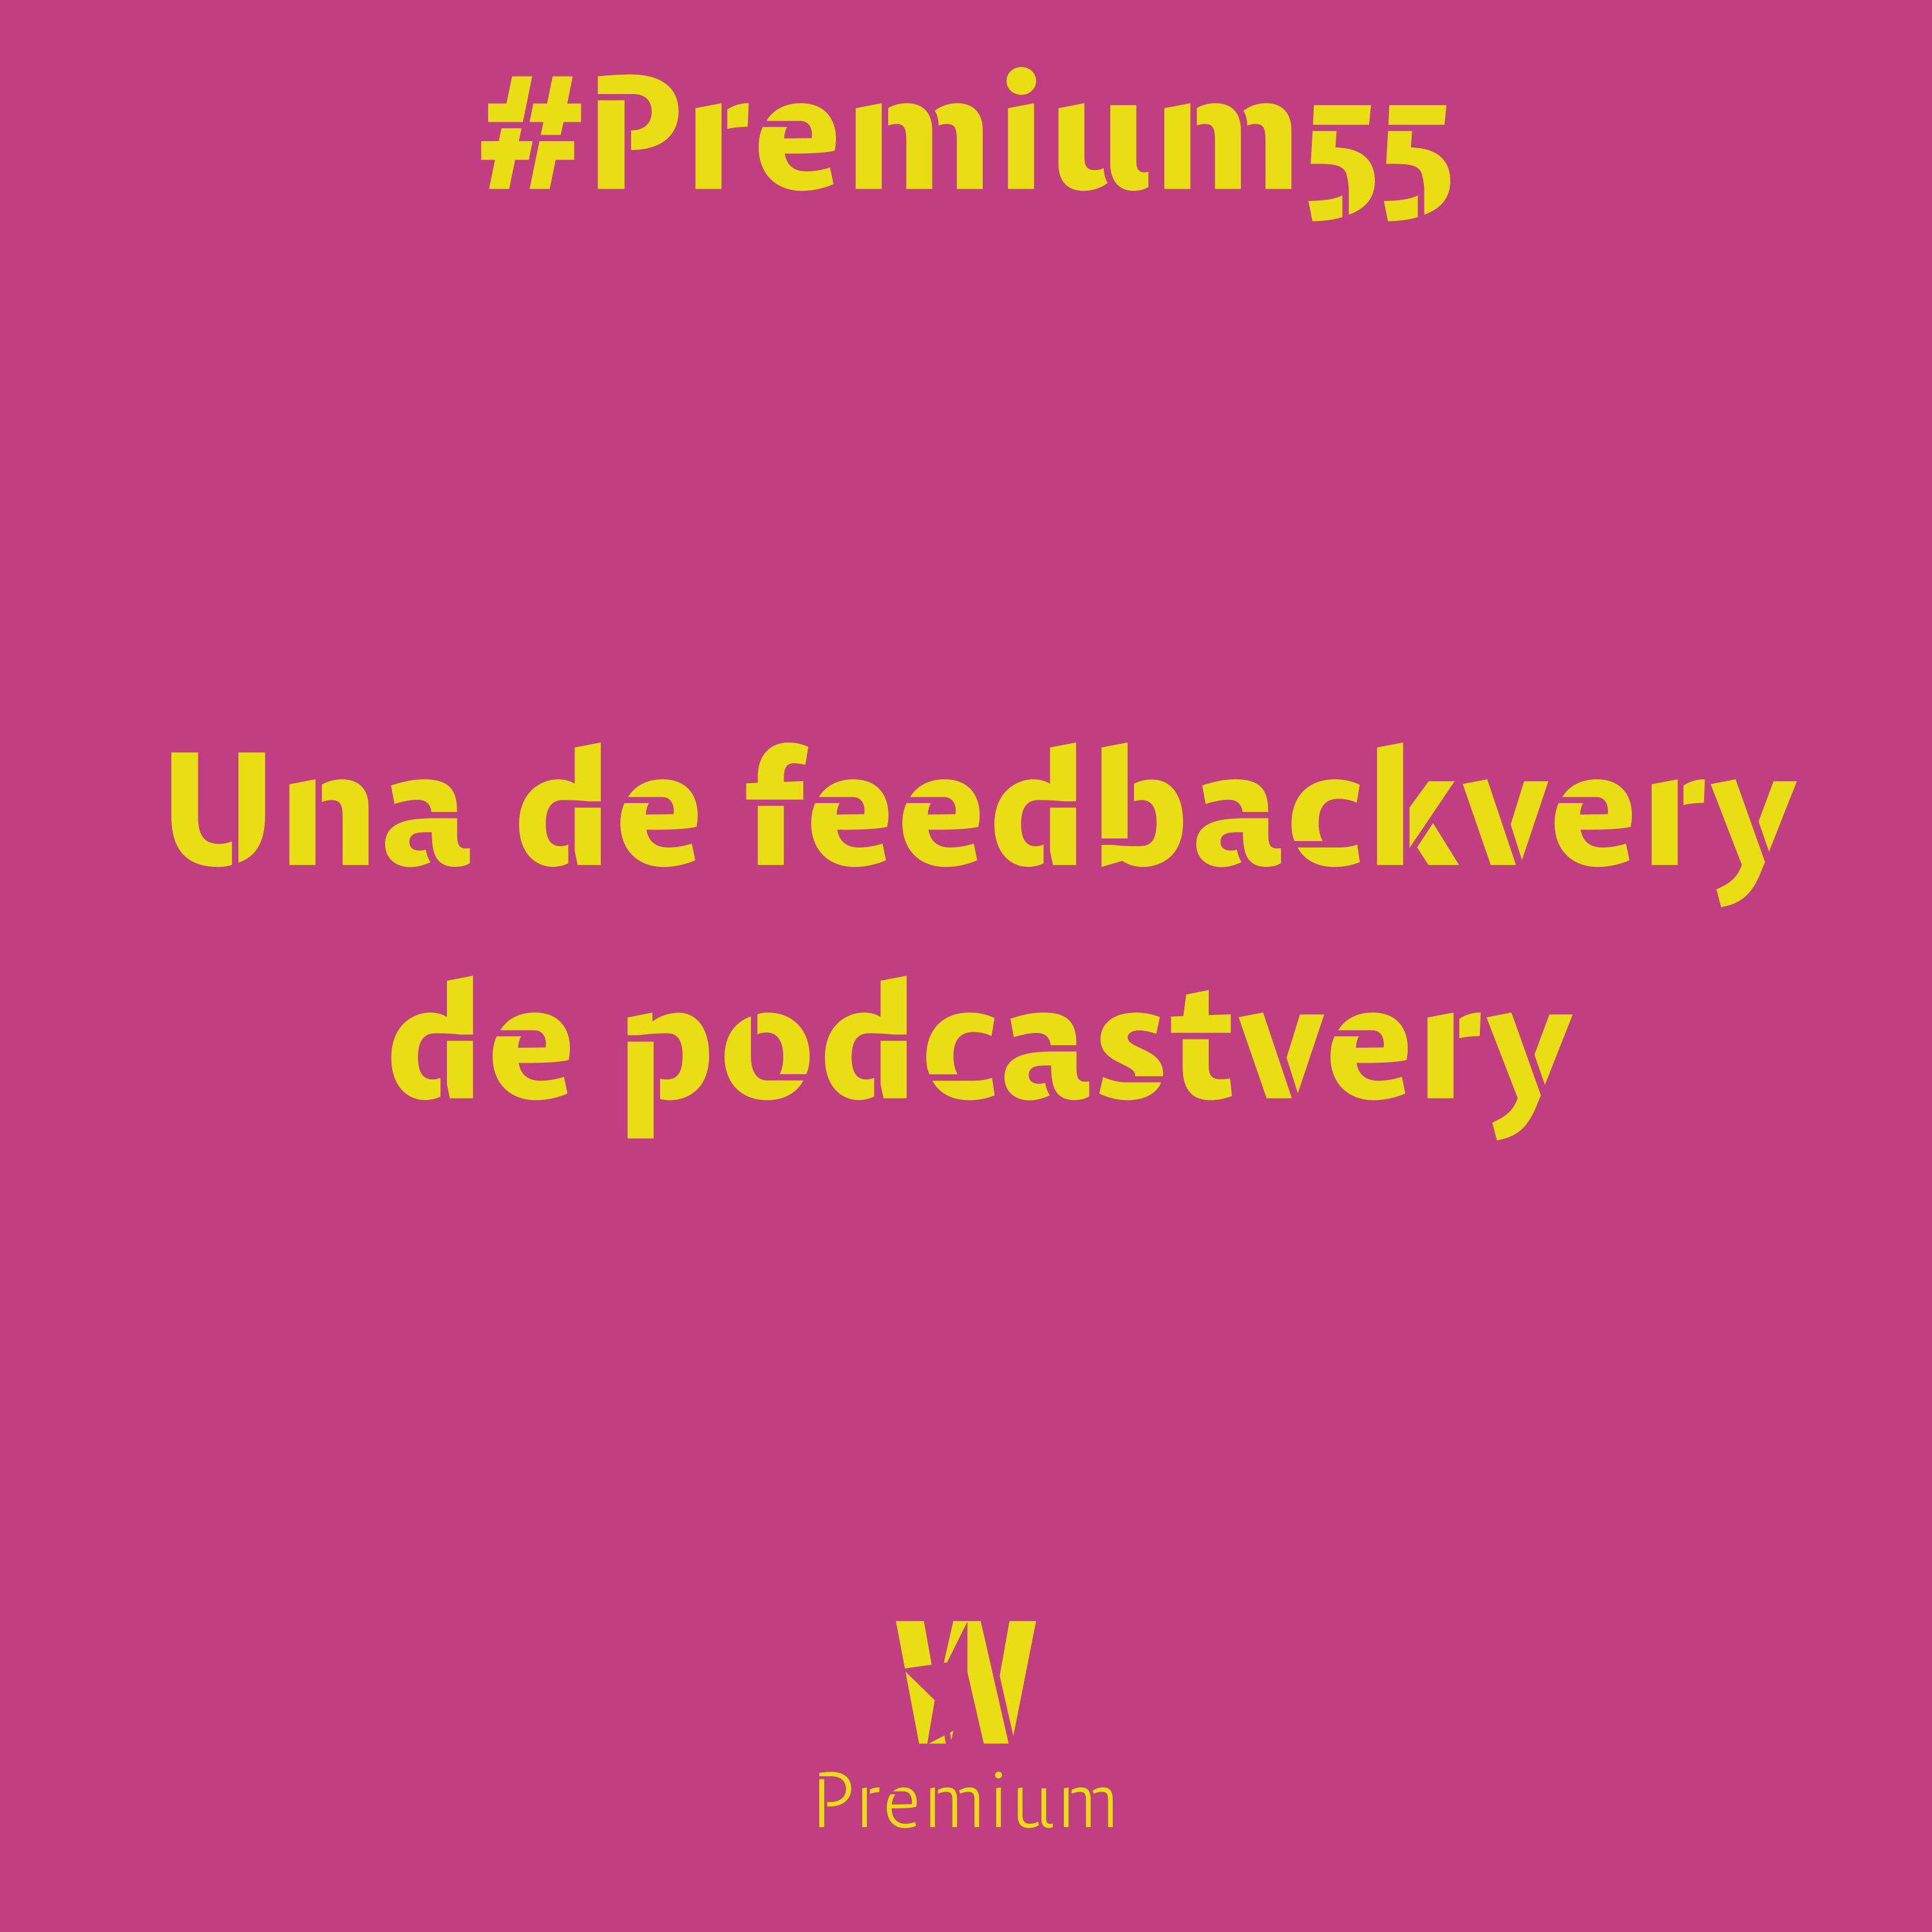 #Premium55 - Una de feedbackvery de podcastvery